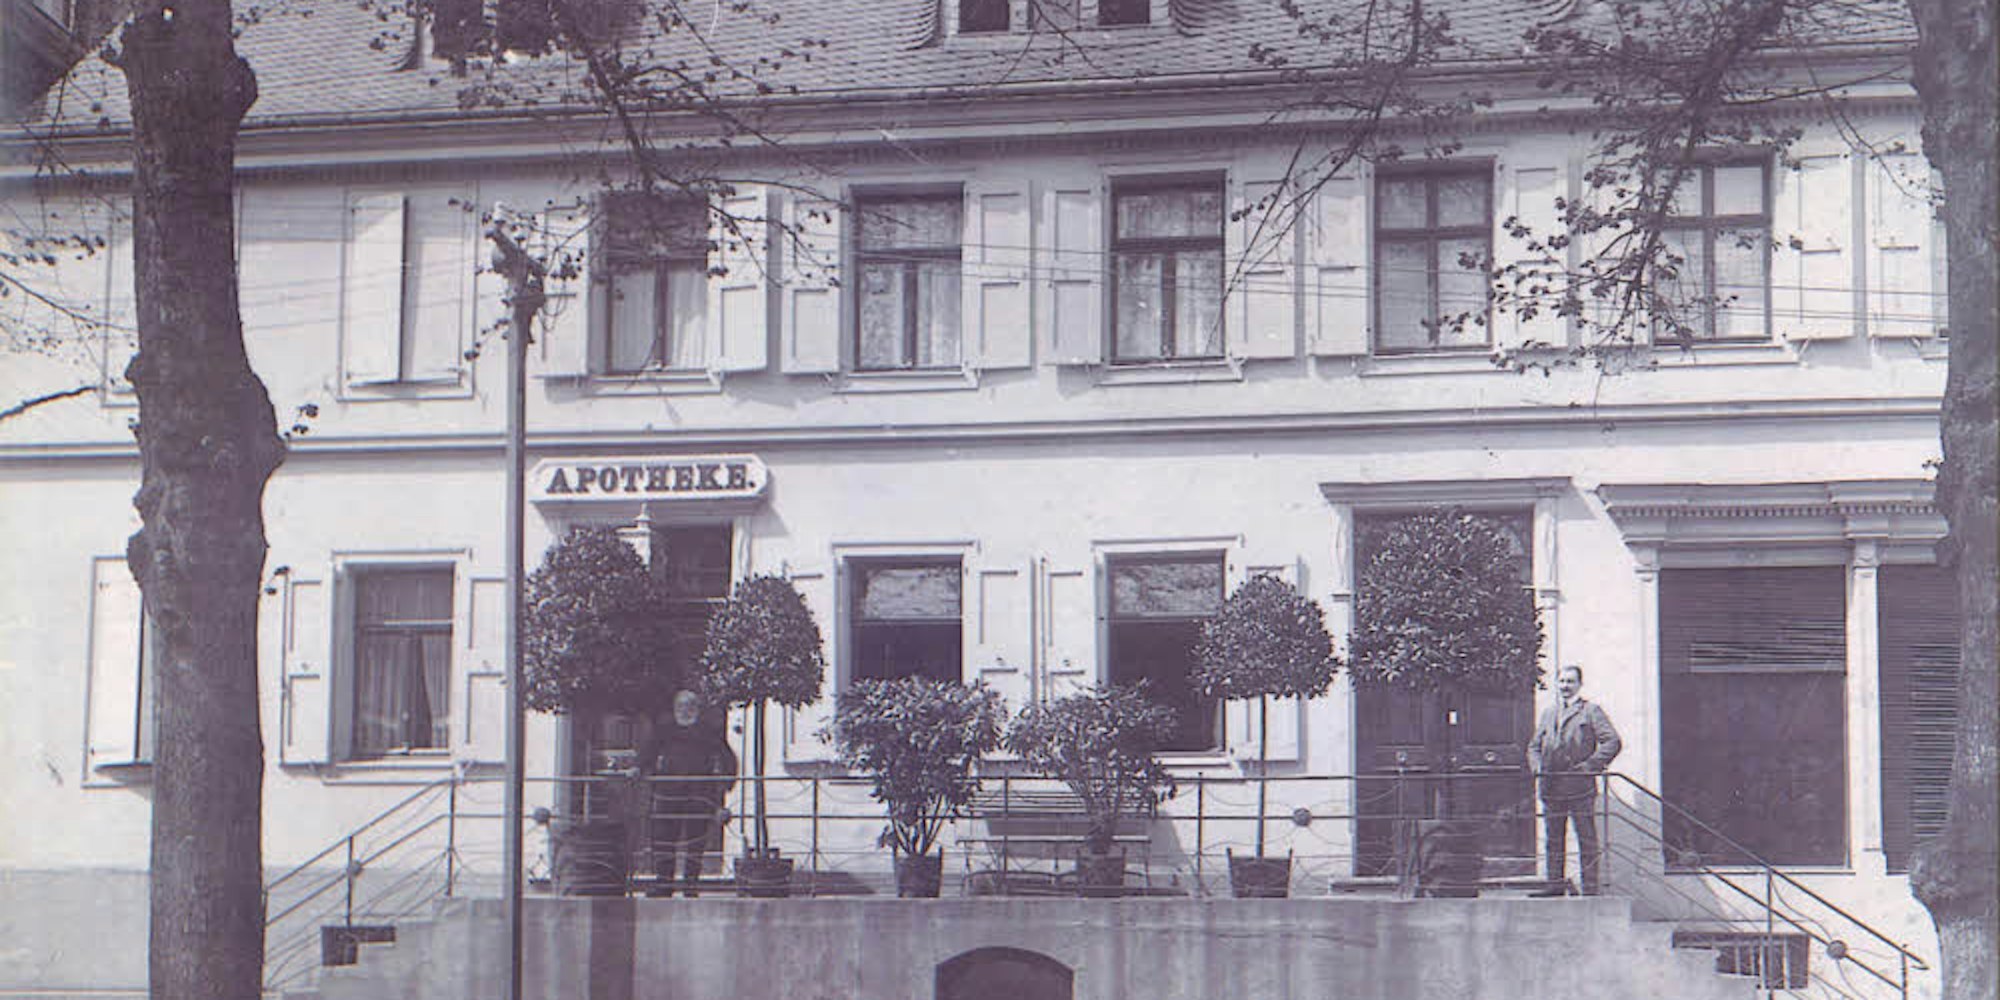 Die erste Apotheke in Eitorf mit Apotheker Julius Schulz (links zwischen den Bäumen), etwa im Jahr 1900.